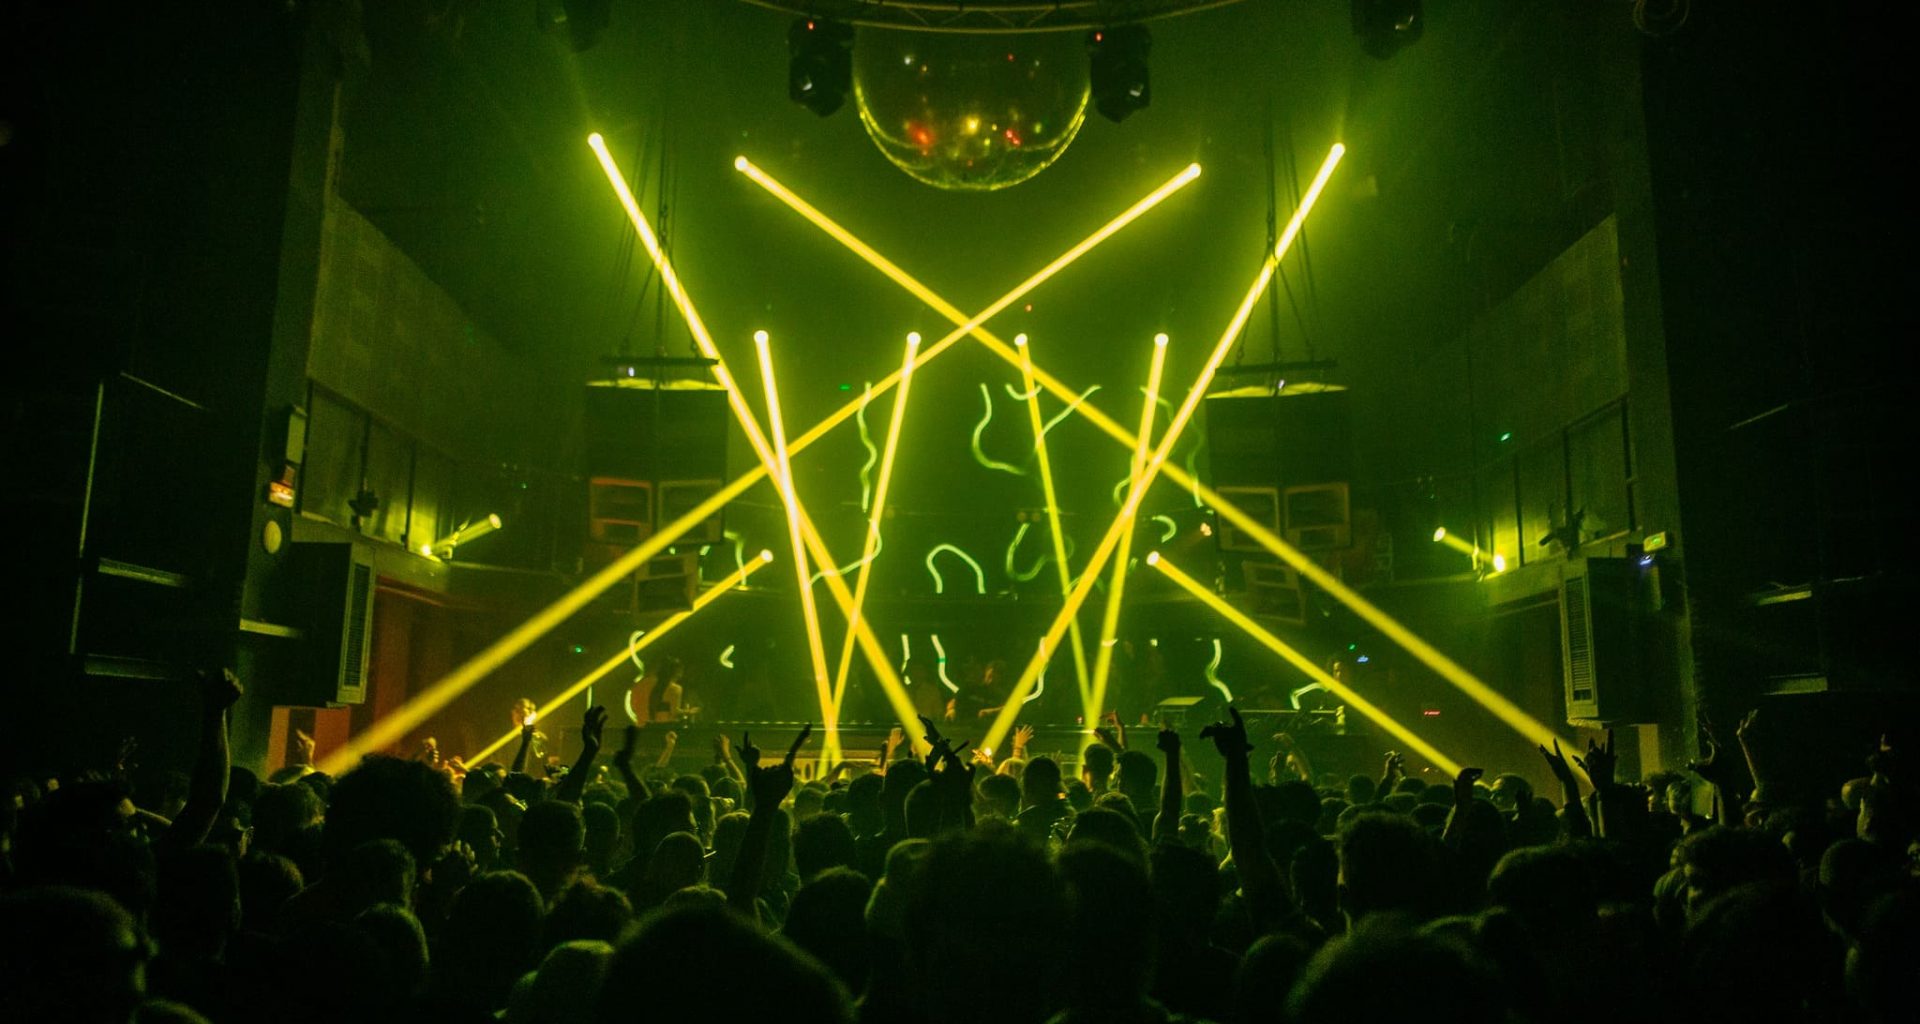 lasers y gente bailando en un club techno en barcelona